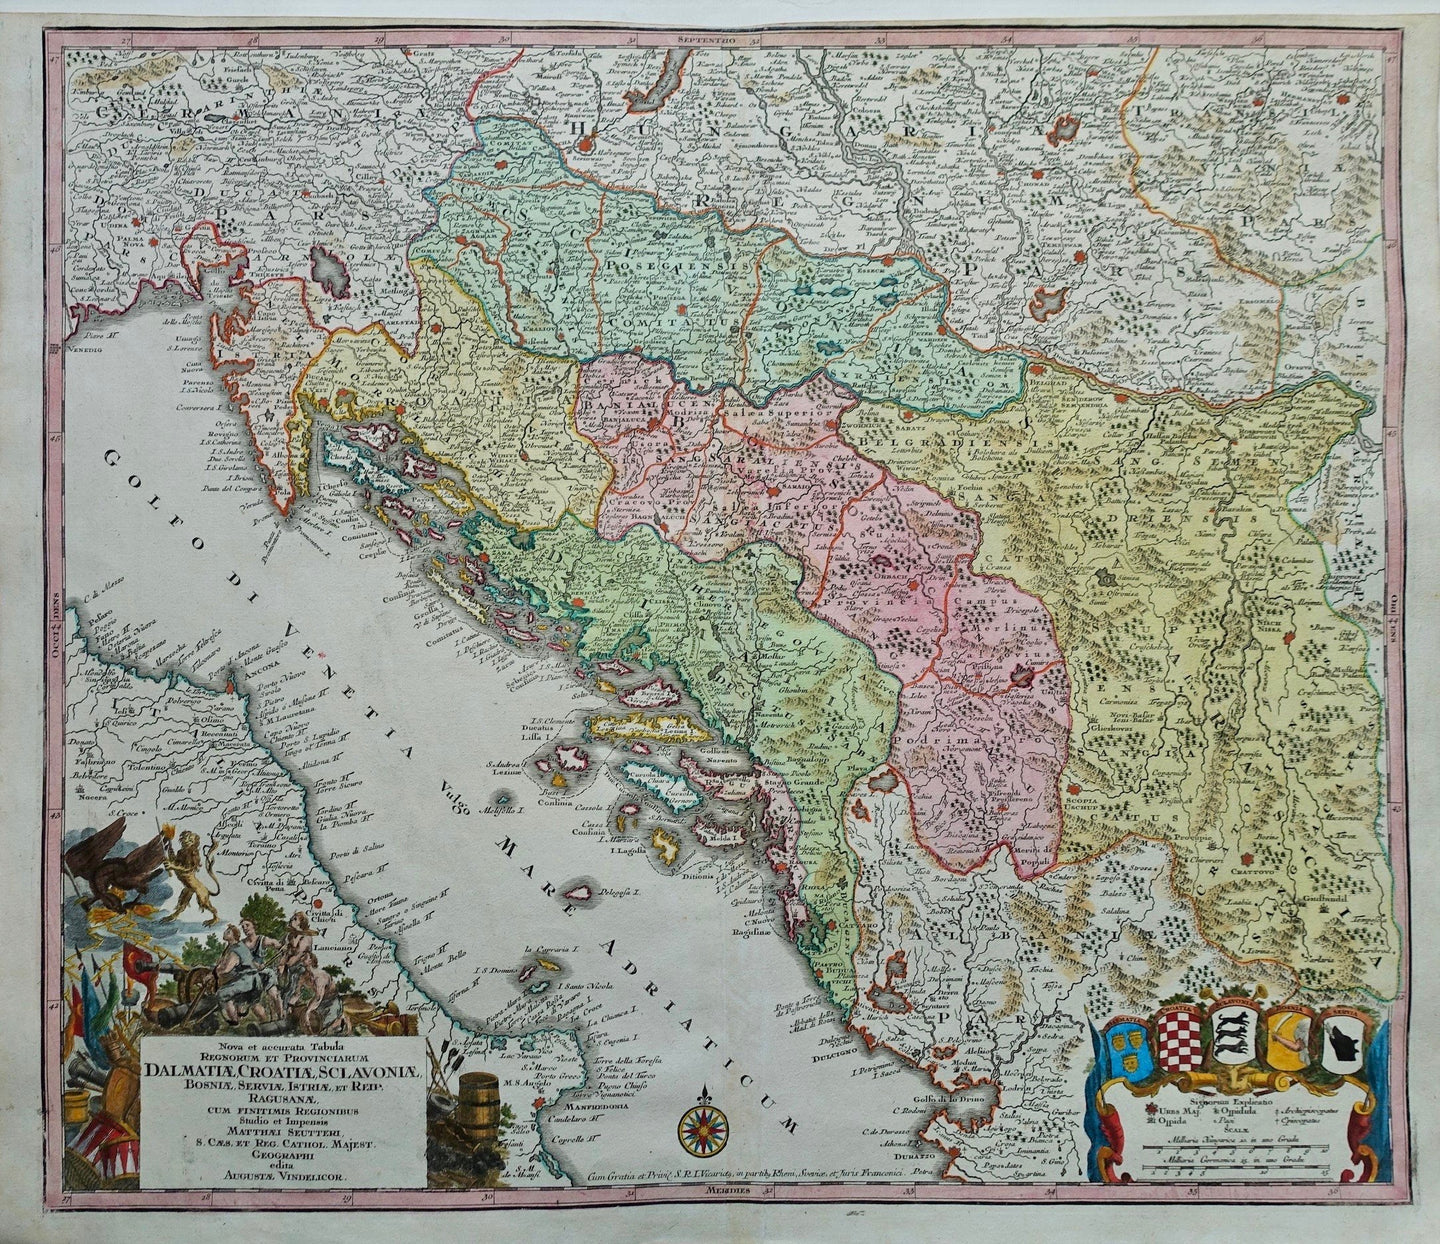 Kroatië Dalmatia Istria Bosnia Herzegovina Serbia Croatia - M Seutter - circa 1740